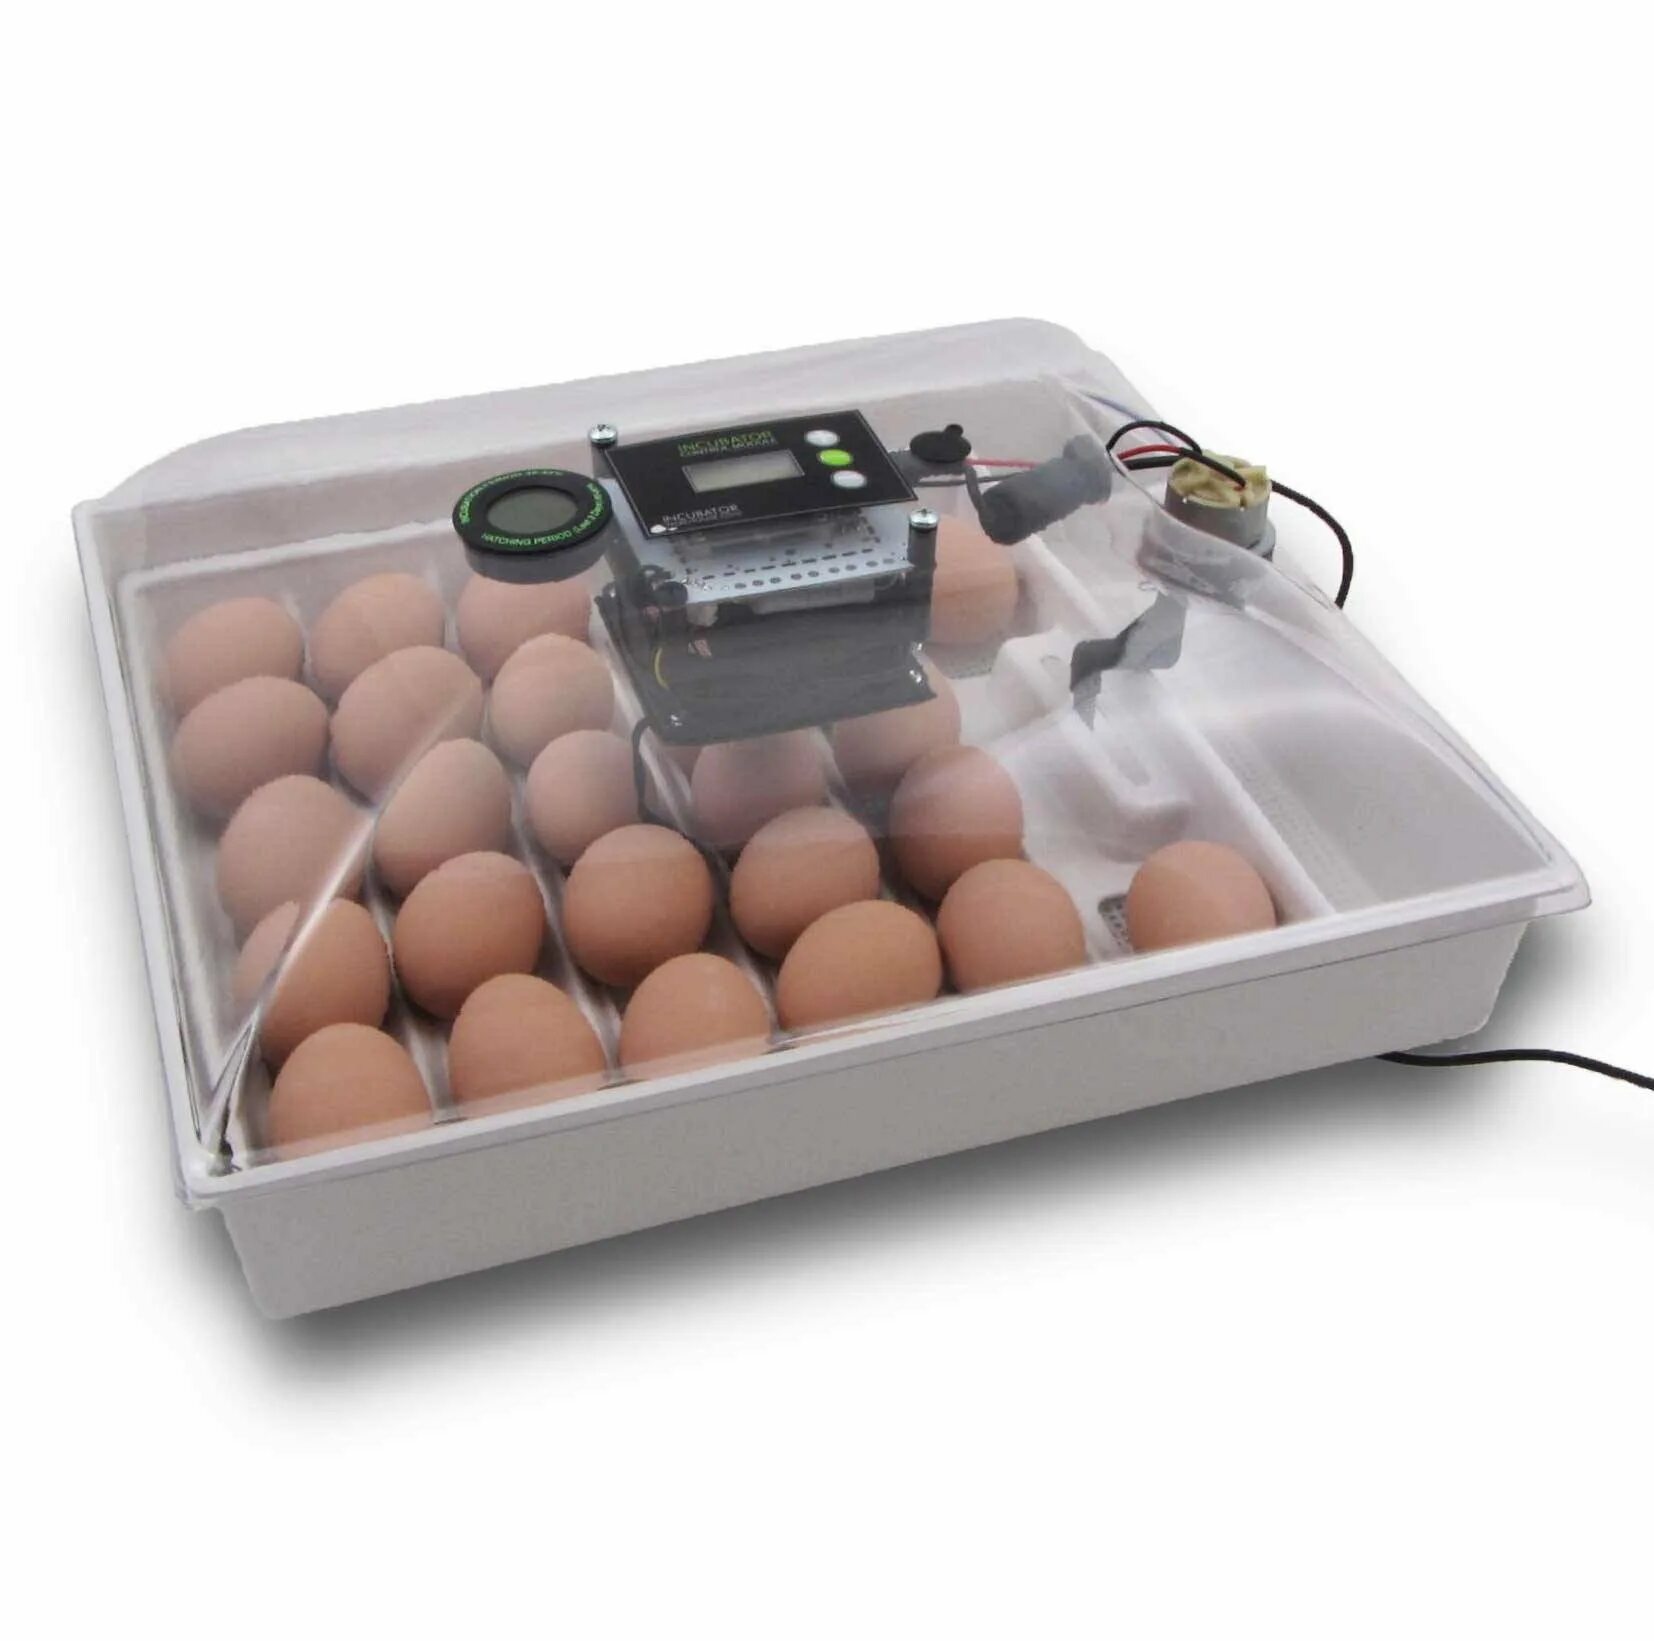 Хорошие инкубаторы для дома отзывы. Инкубатор Egg incubator. Инкубатор FLORAFLEX incubator Kit. Инкубатор SITITEK 36. Кв400 binger инкубатор для яиц.